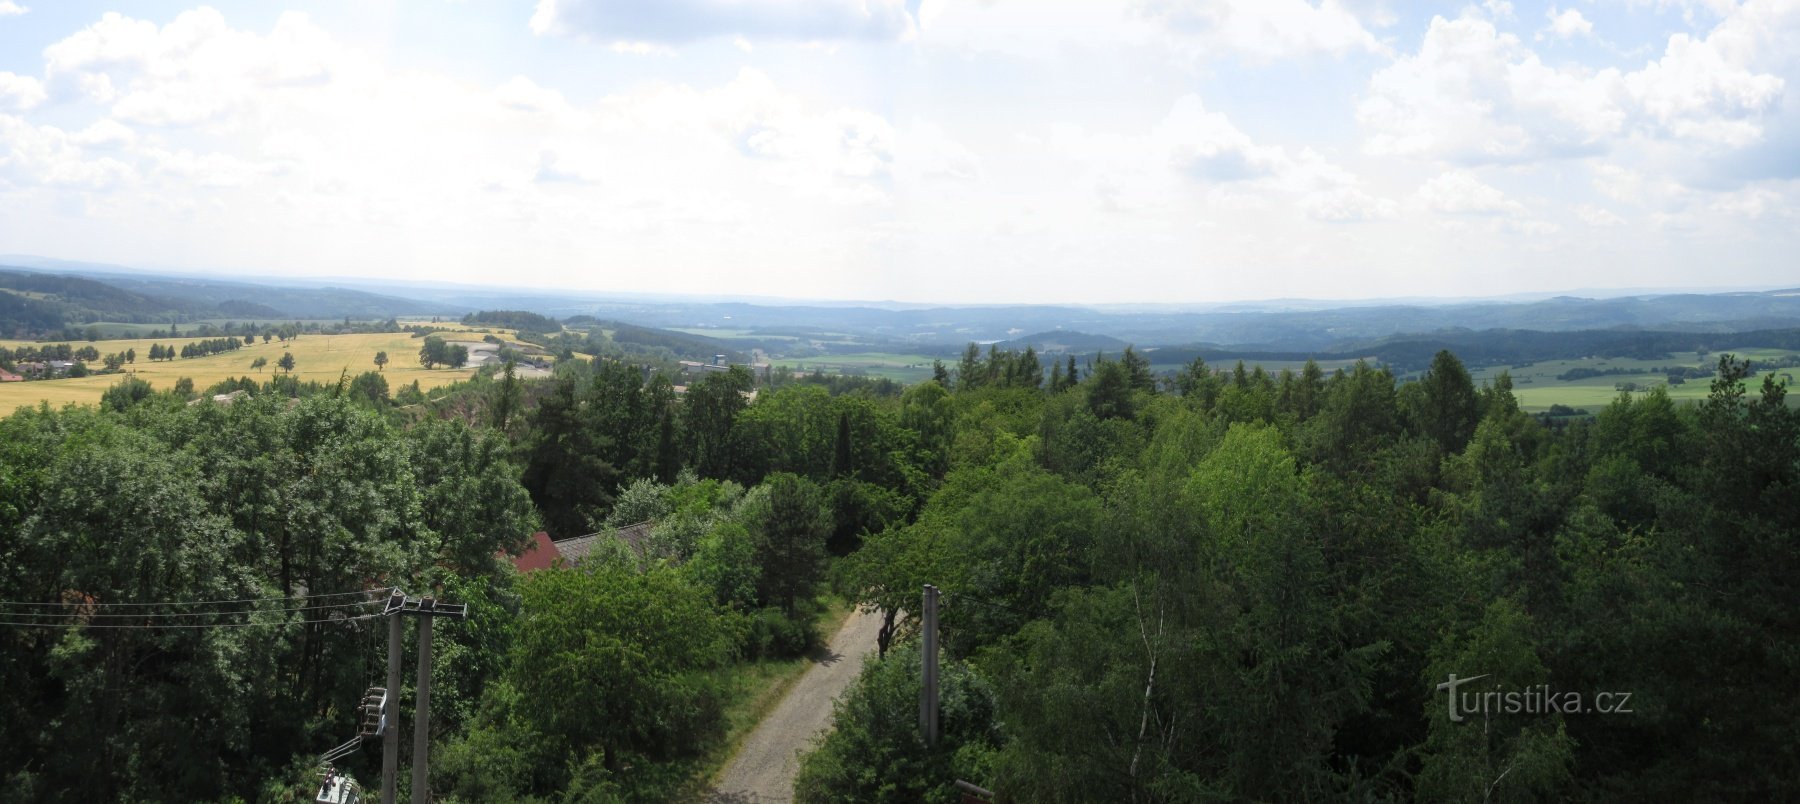 Onen svět - Langs Aussichtsturm, auch Onen svět Aussichtsturm bei Lašovice